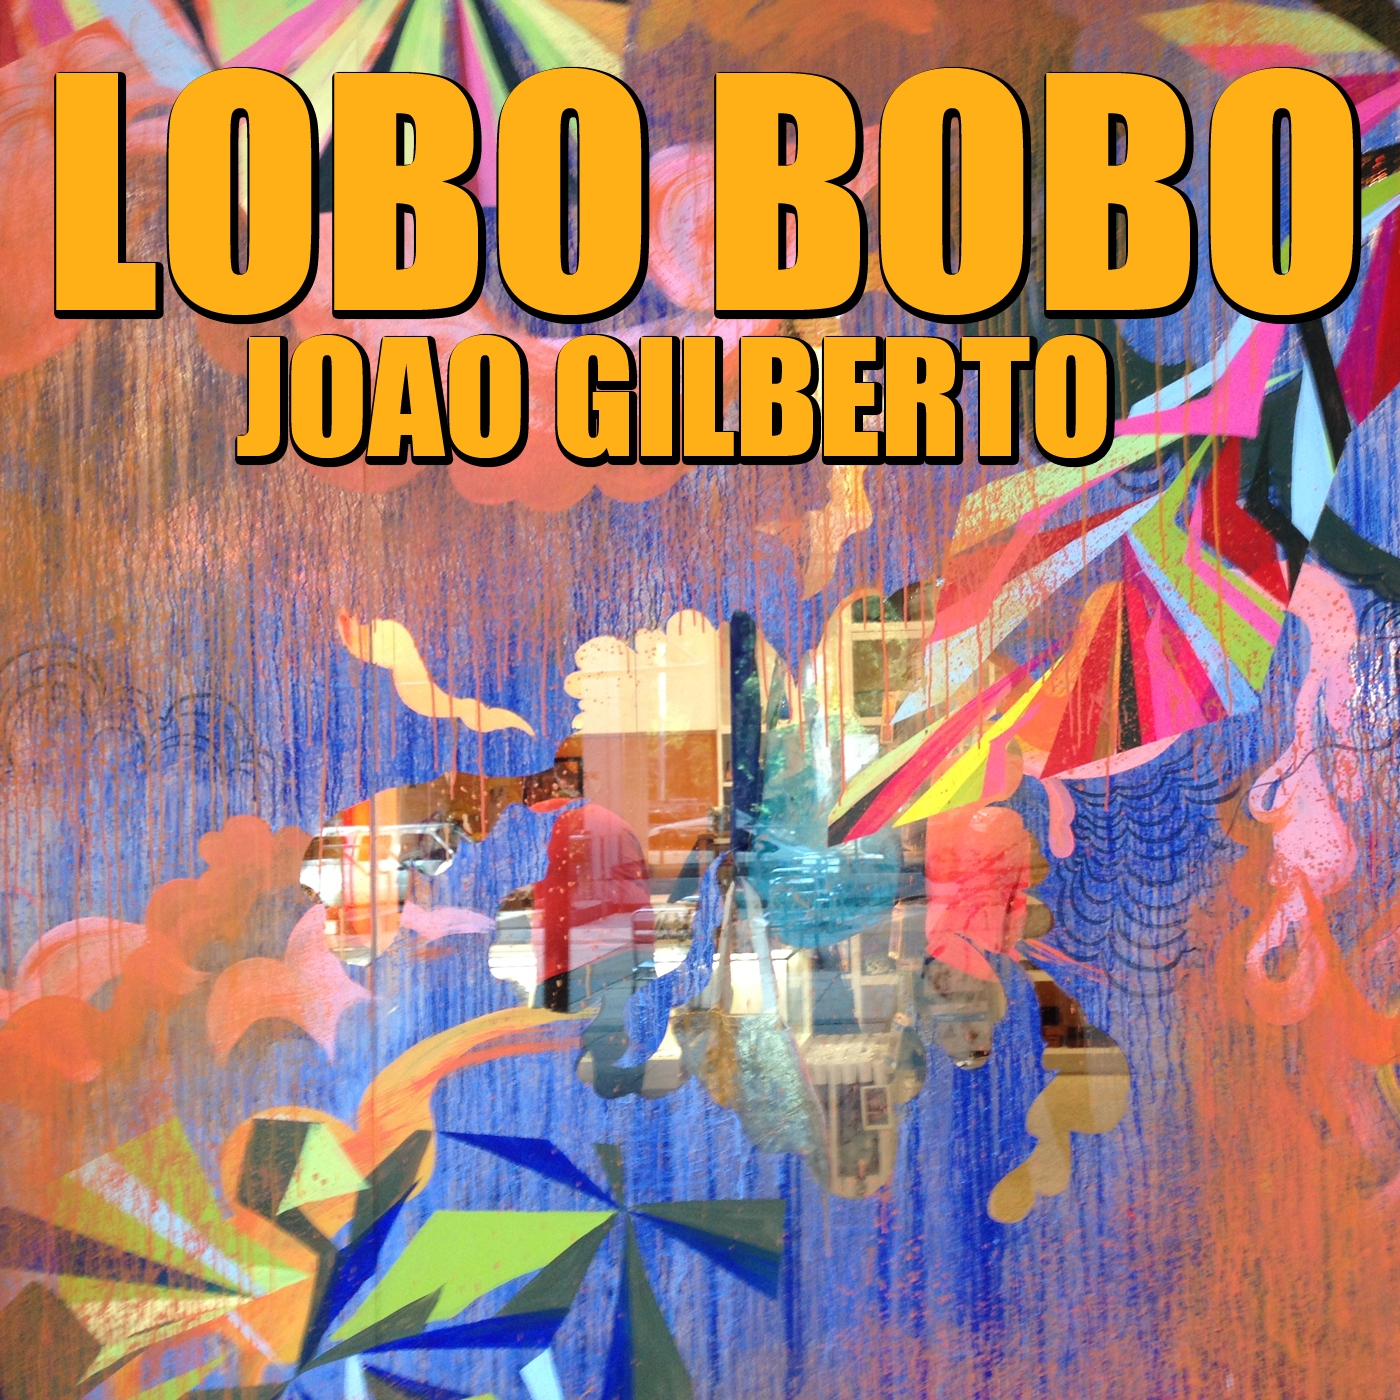 Lobo Bobo